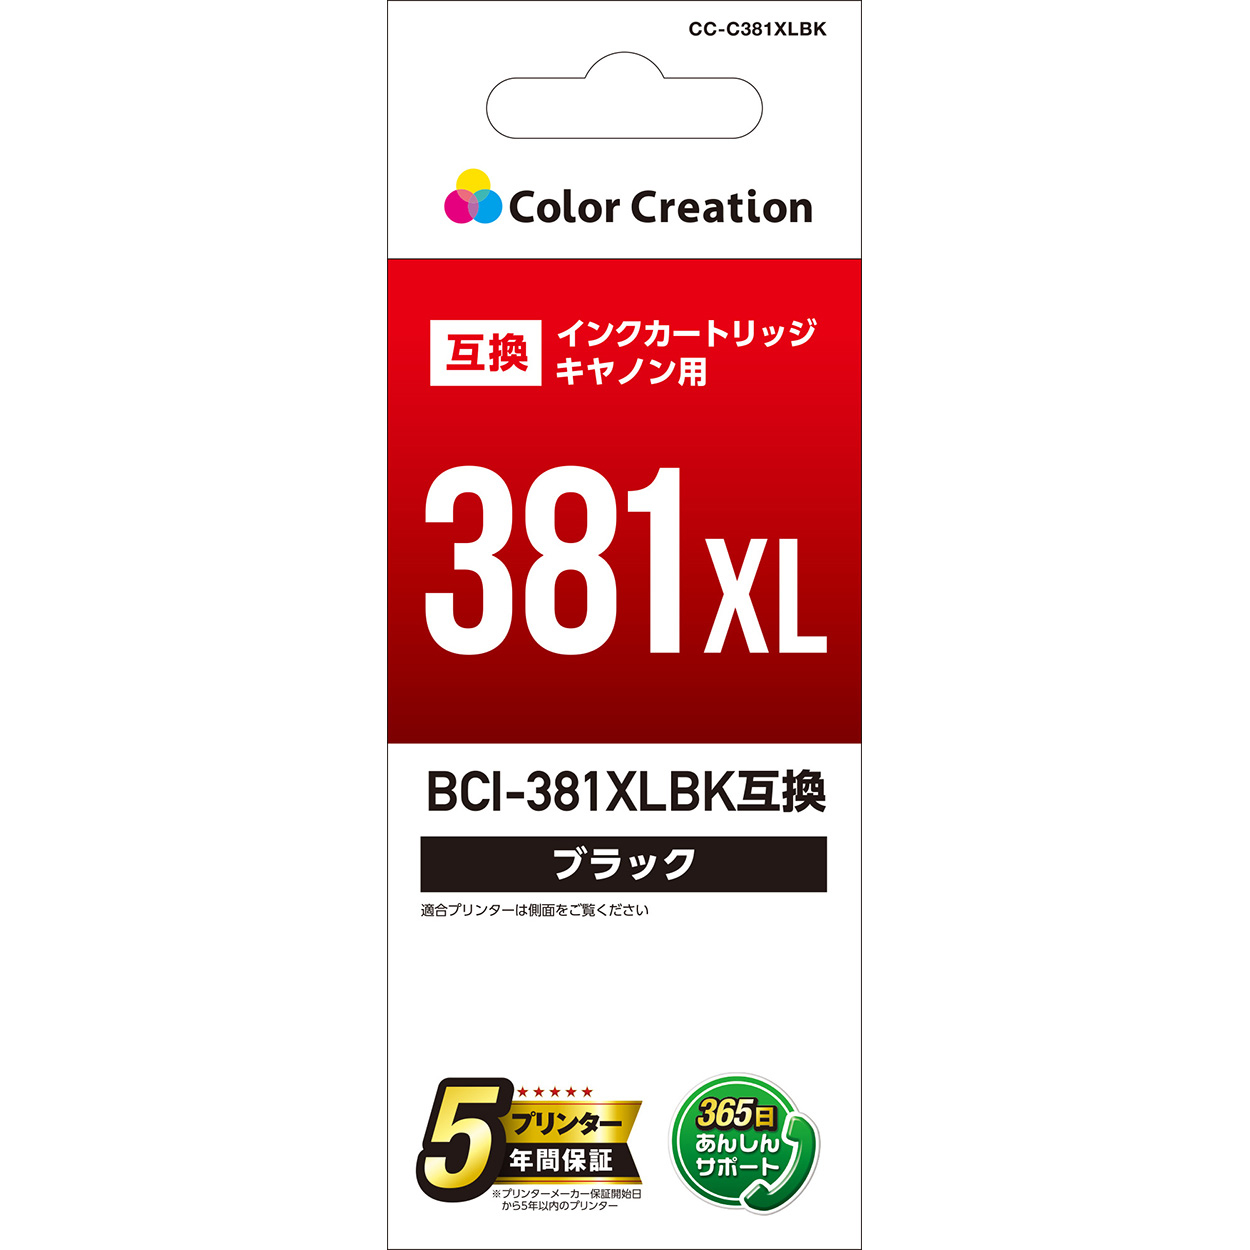 キヤノン BCI-381XLBK互換 インクカートリッジ CC-C381XLBK